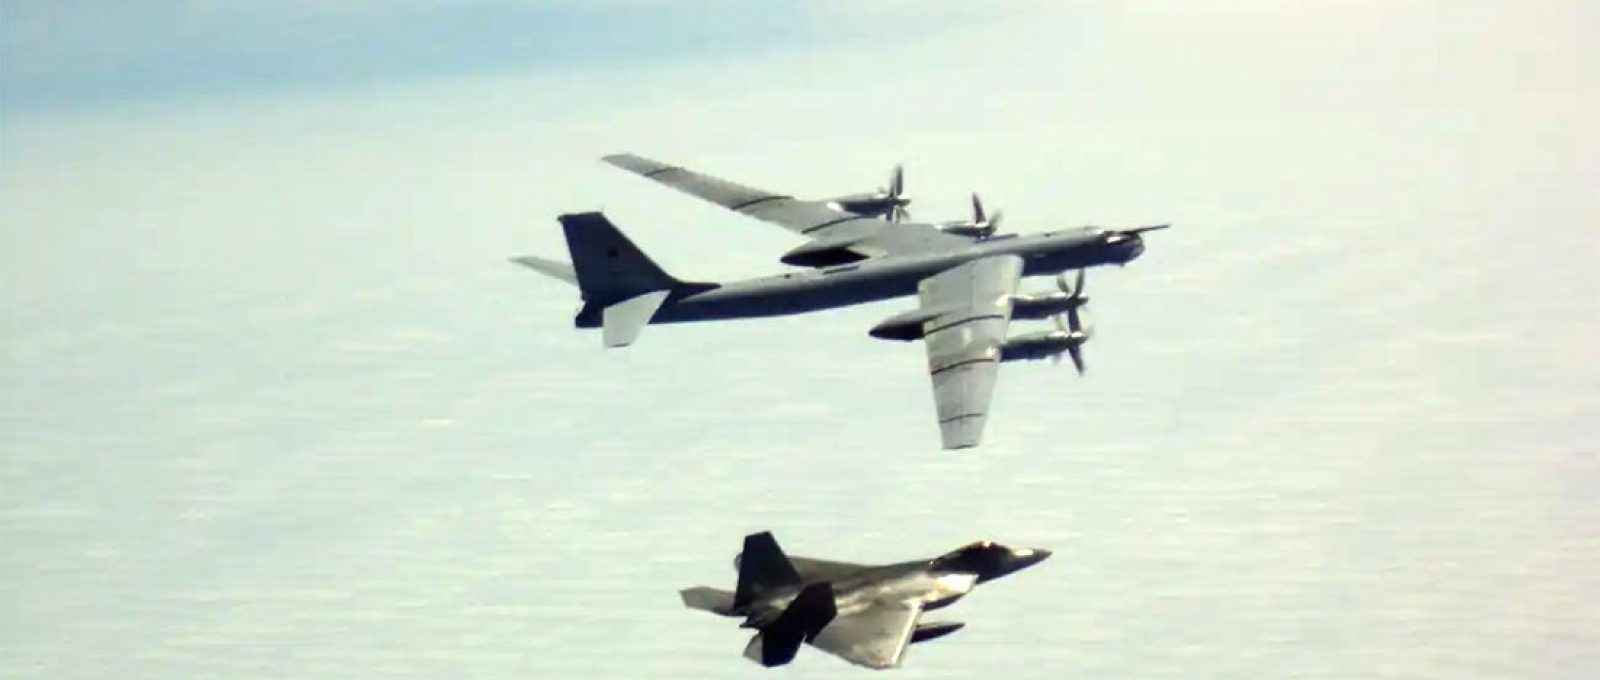 Um F-22 da Força Aérea dos EUA baseado no Alasca intercepta um bombardeiro russo Tu-95 em 9 de junho de 2020 (Foto: NORAD).